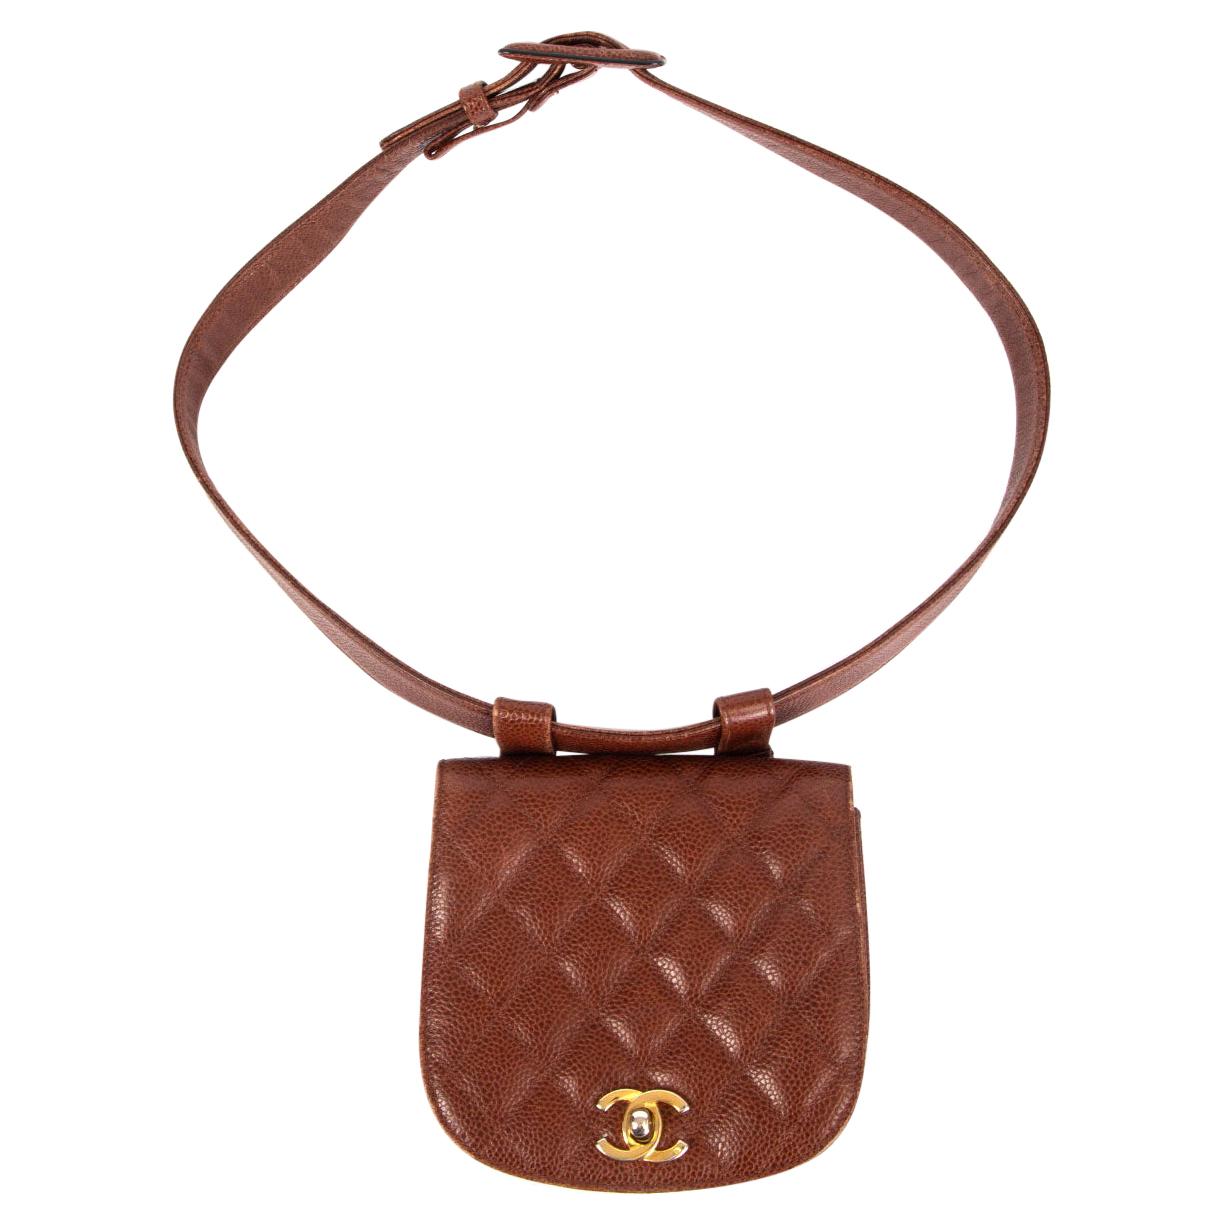 CHANEL chestnut brown quilted Caviar leather VINTAGE 1990 Belt Bag